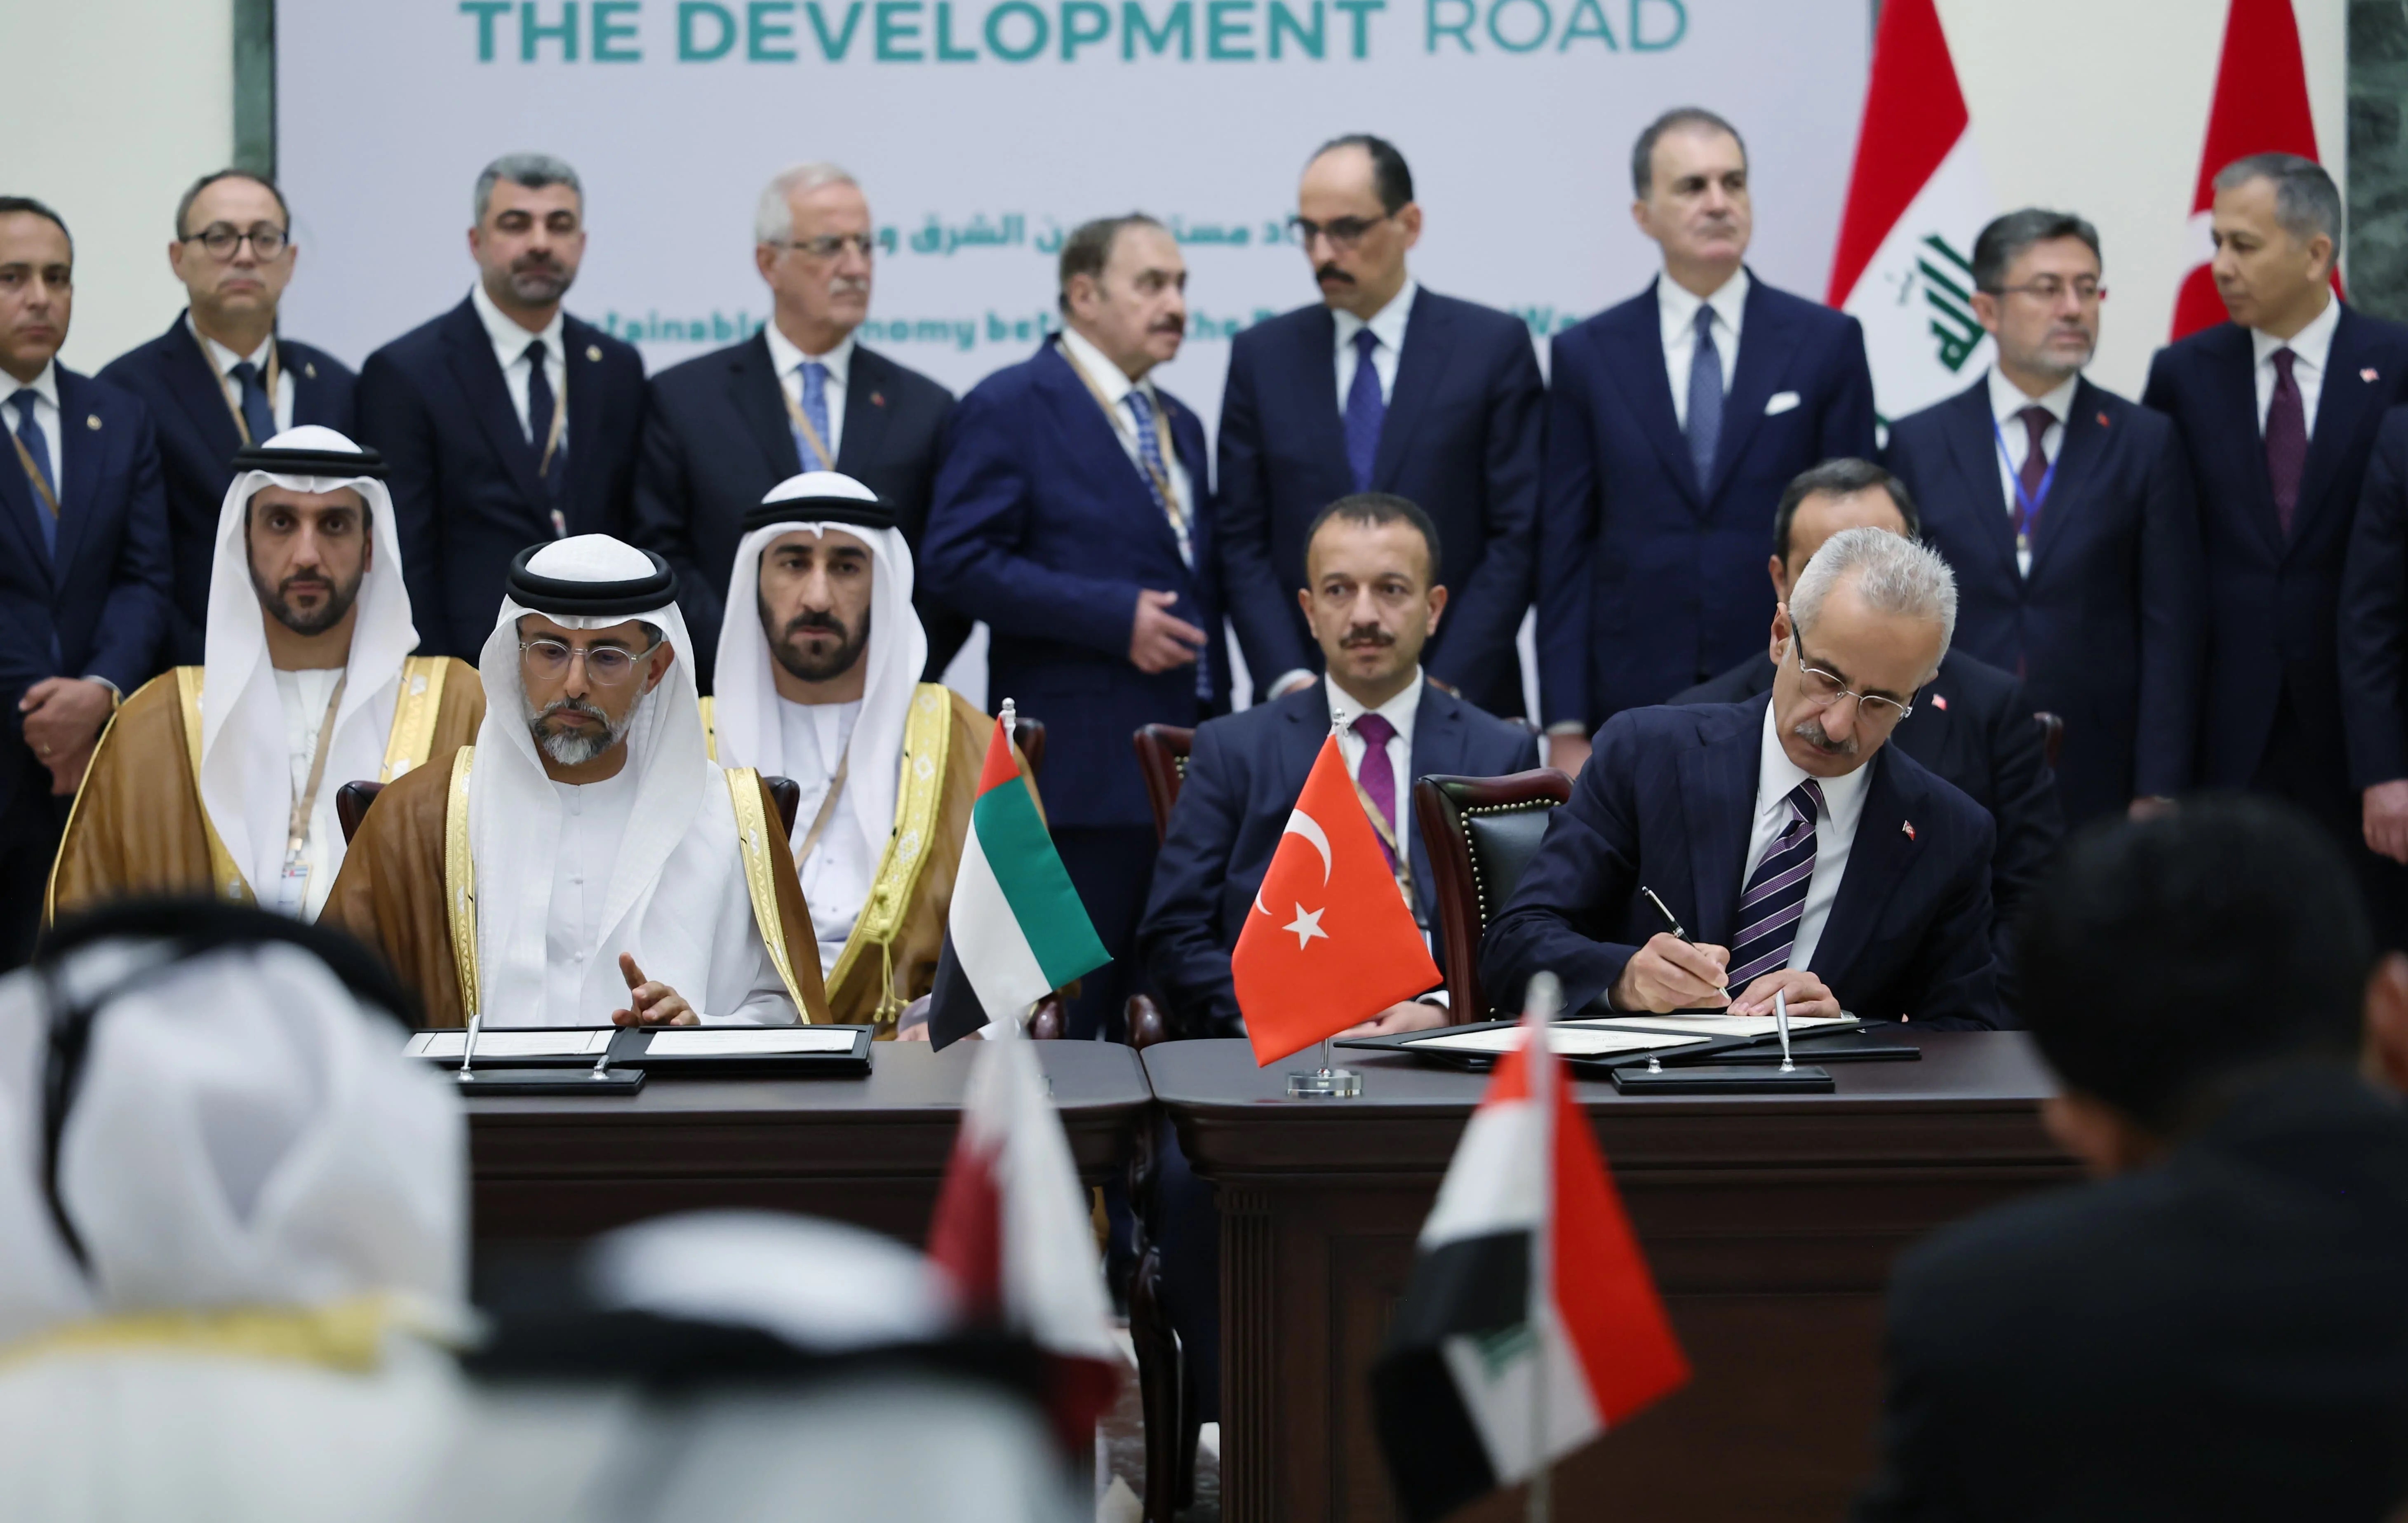 العراق وتركيا وقطر والإمارات توقع  على مذكرة تفاهم حول مشروع طريق التنمية.